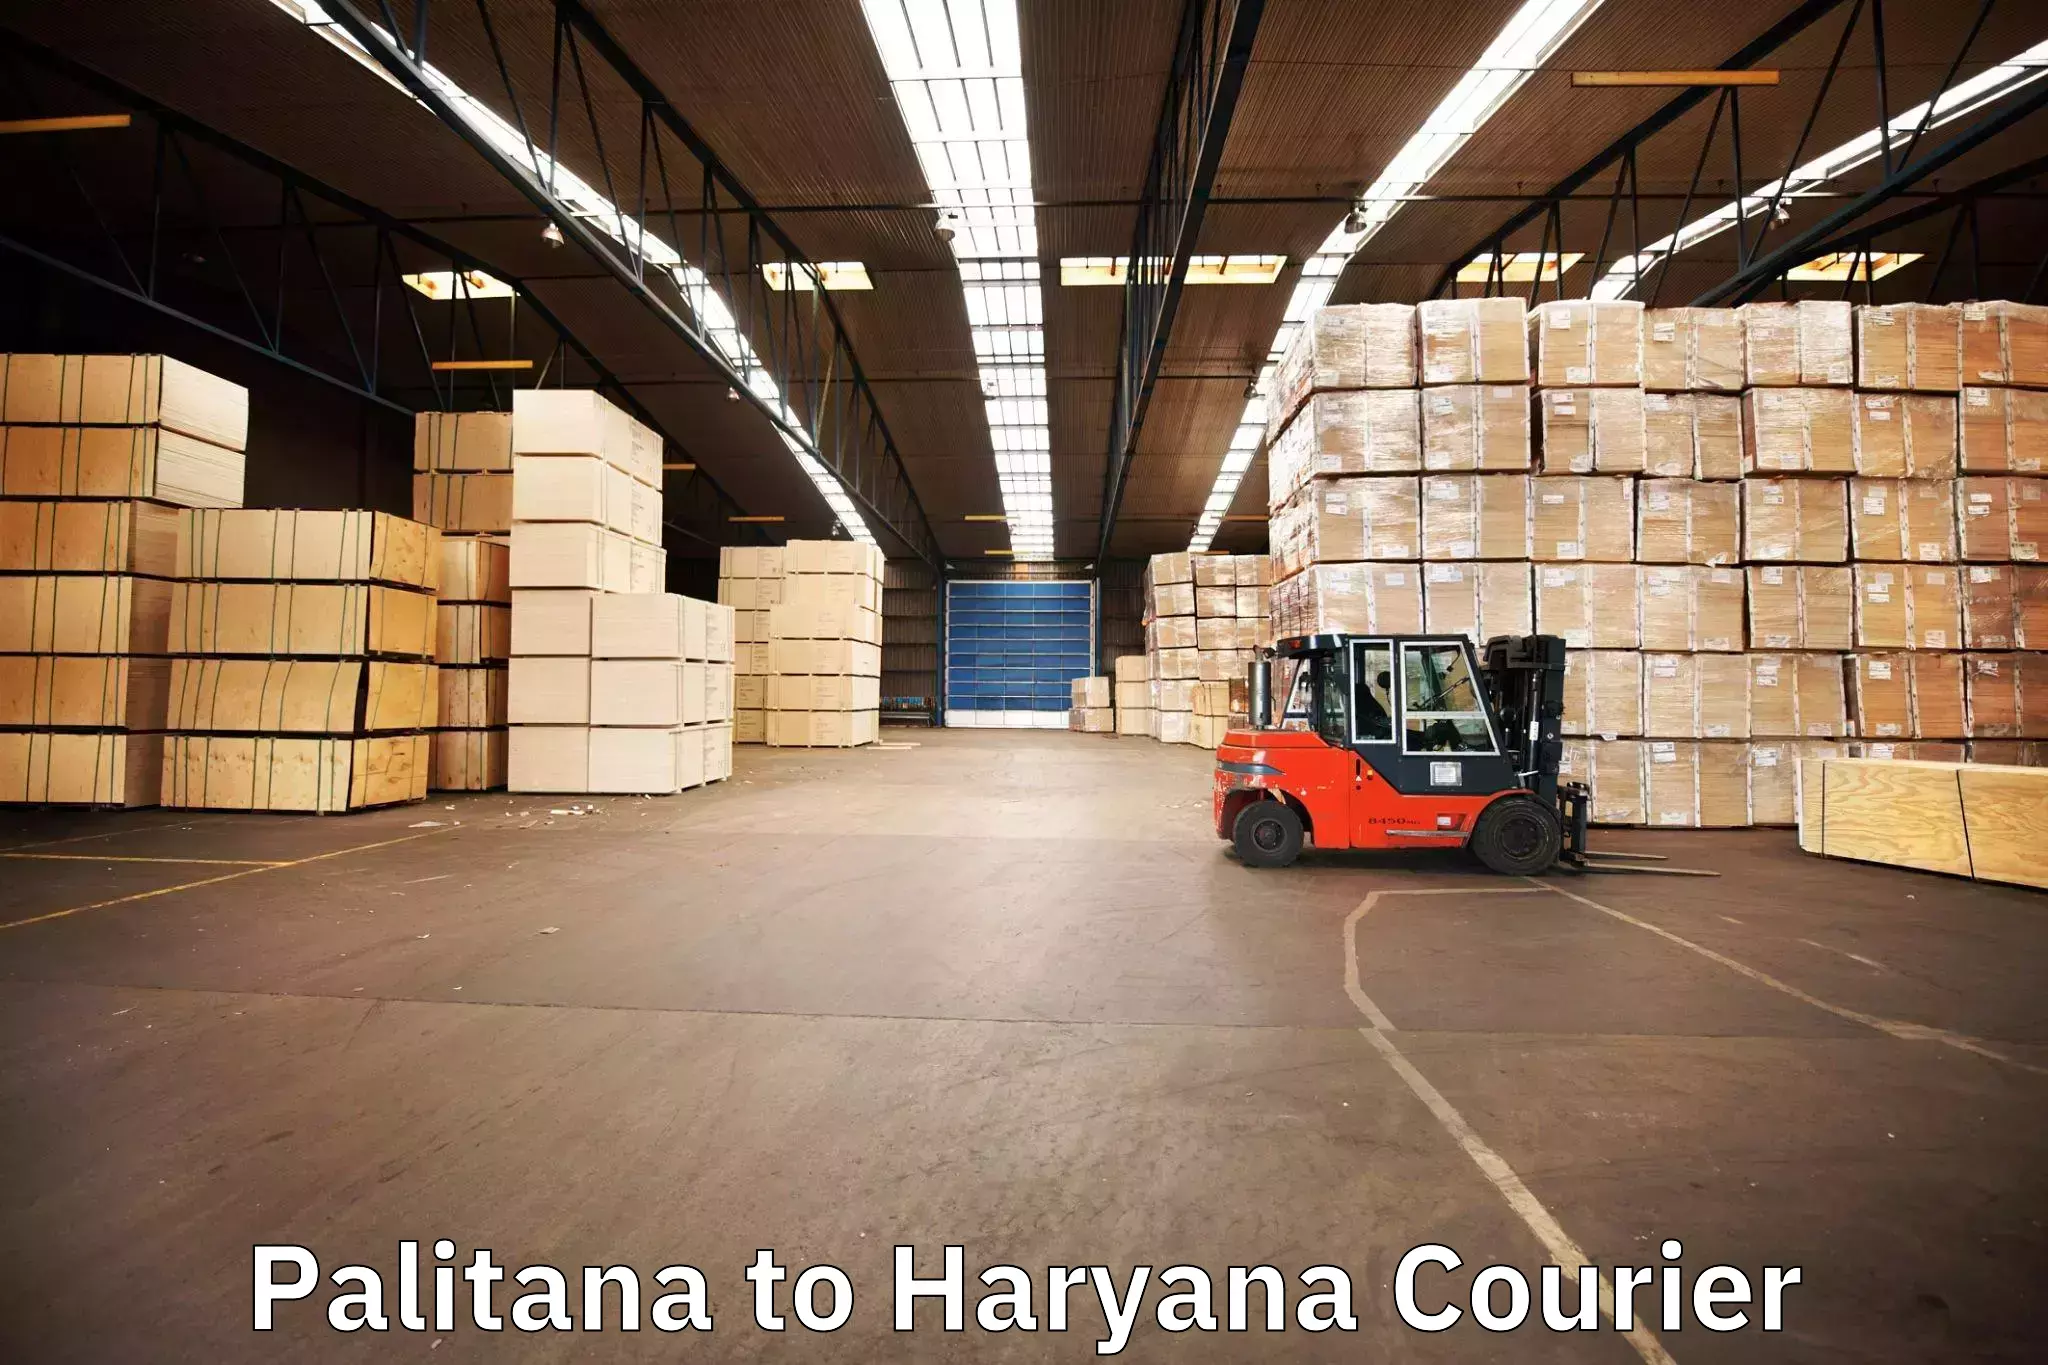 Efficient moving company Palitana to Narwana